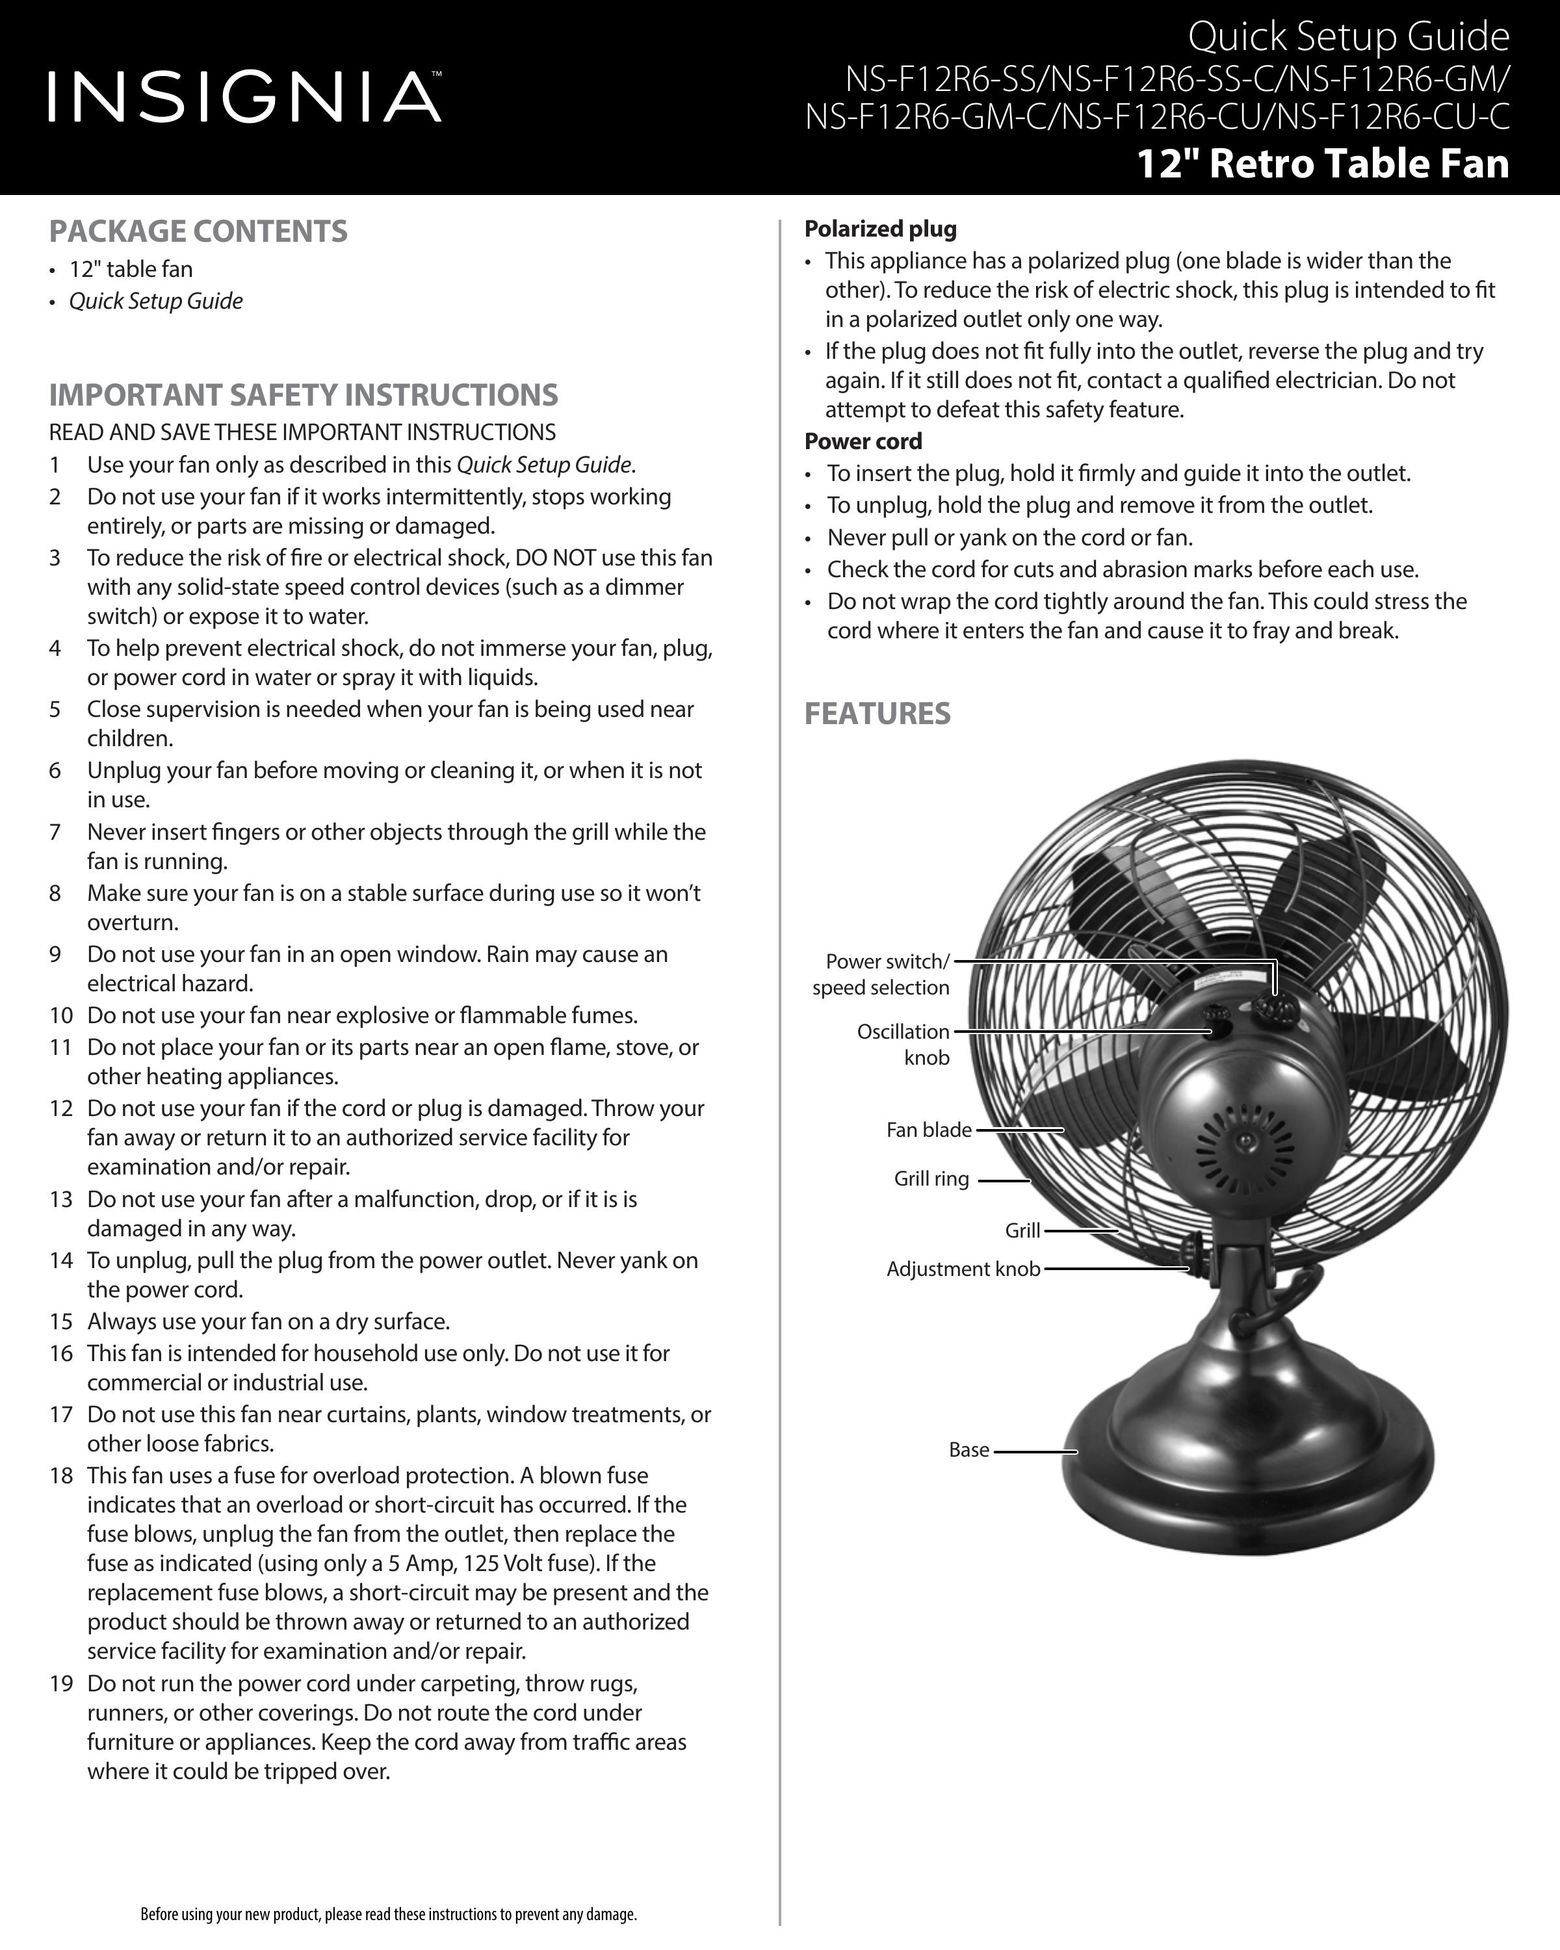 Insignia NS-F12R6-SS-C Fan User Manual